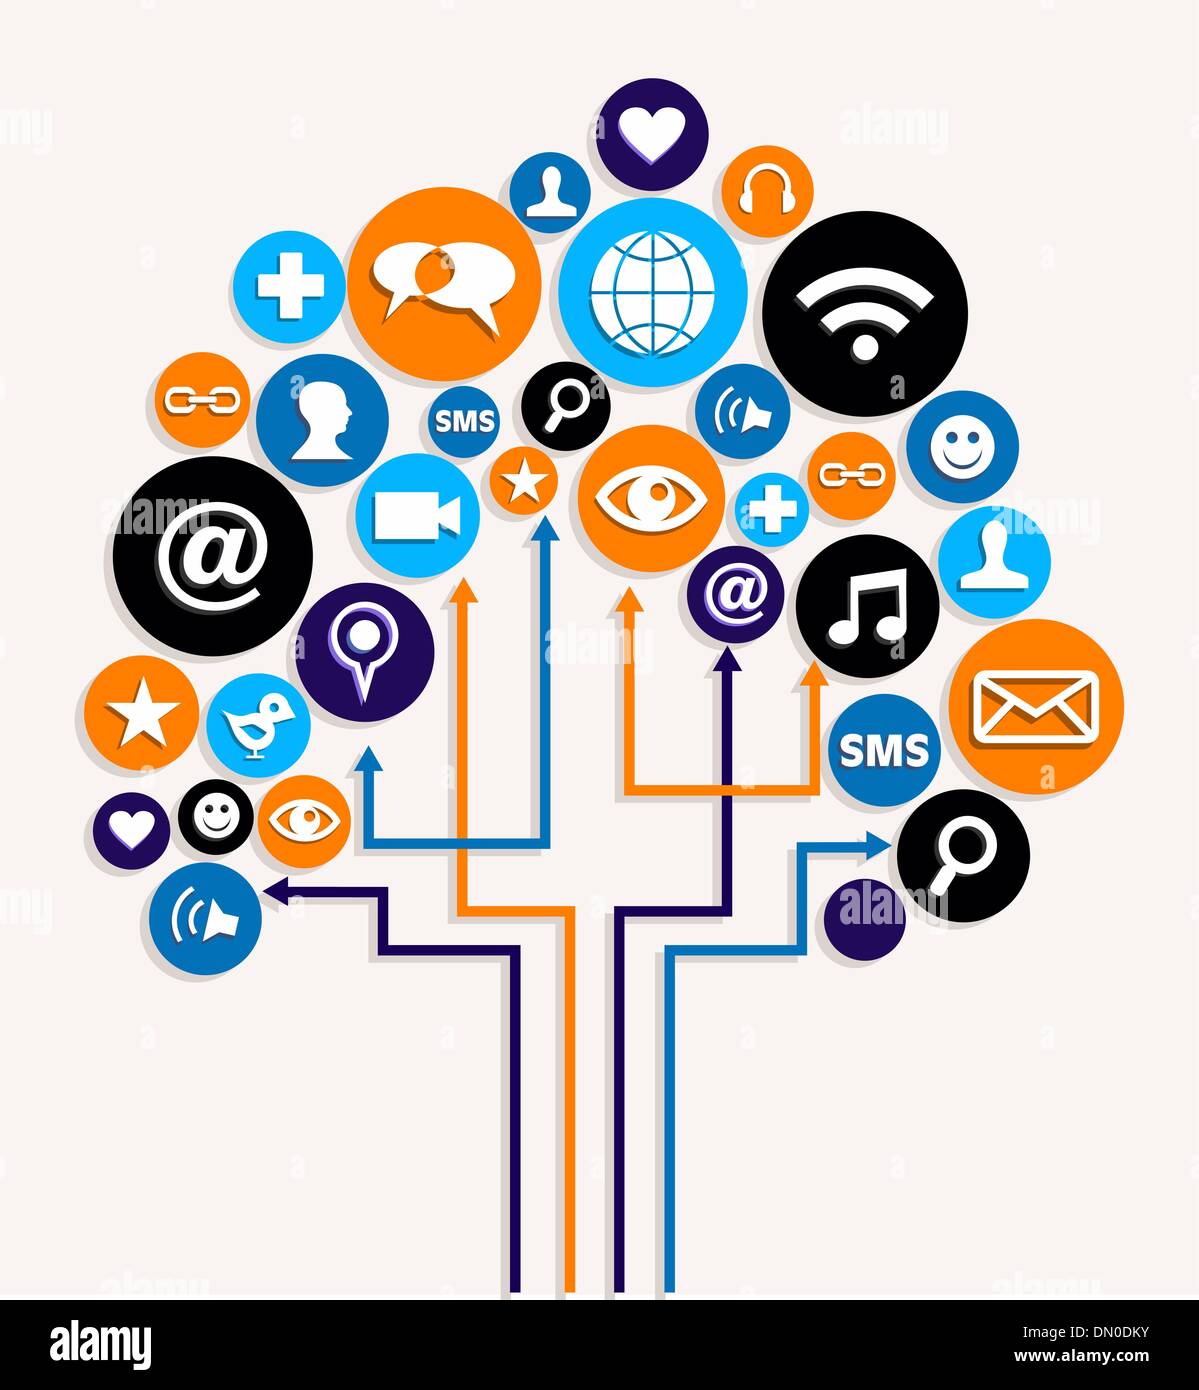 Social-Media-Netzwerke Businessplan Baum Stock Vektor